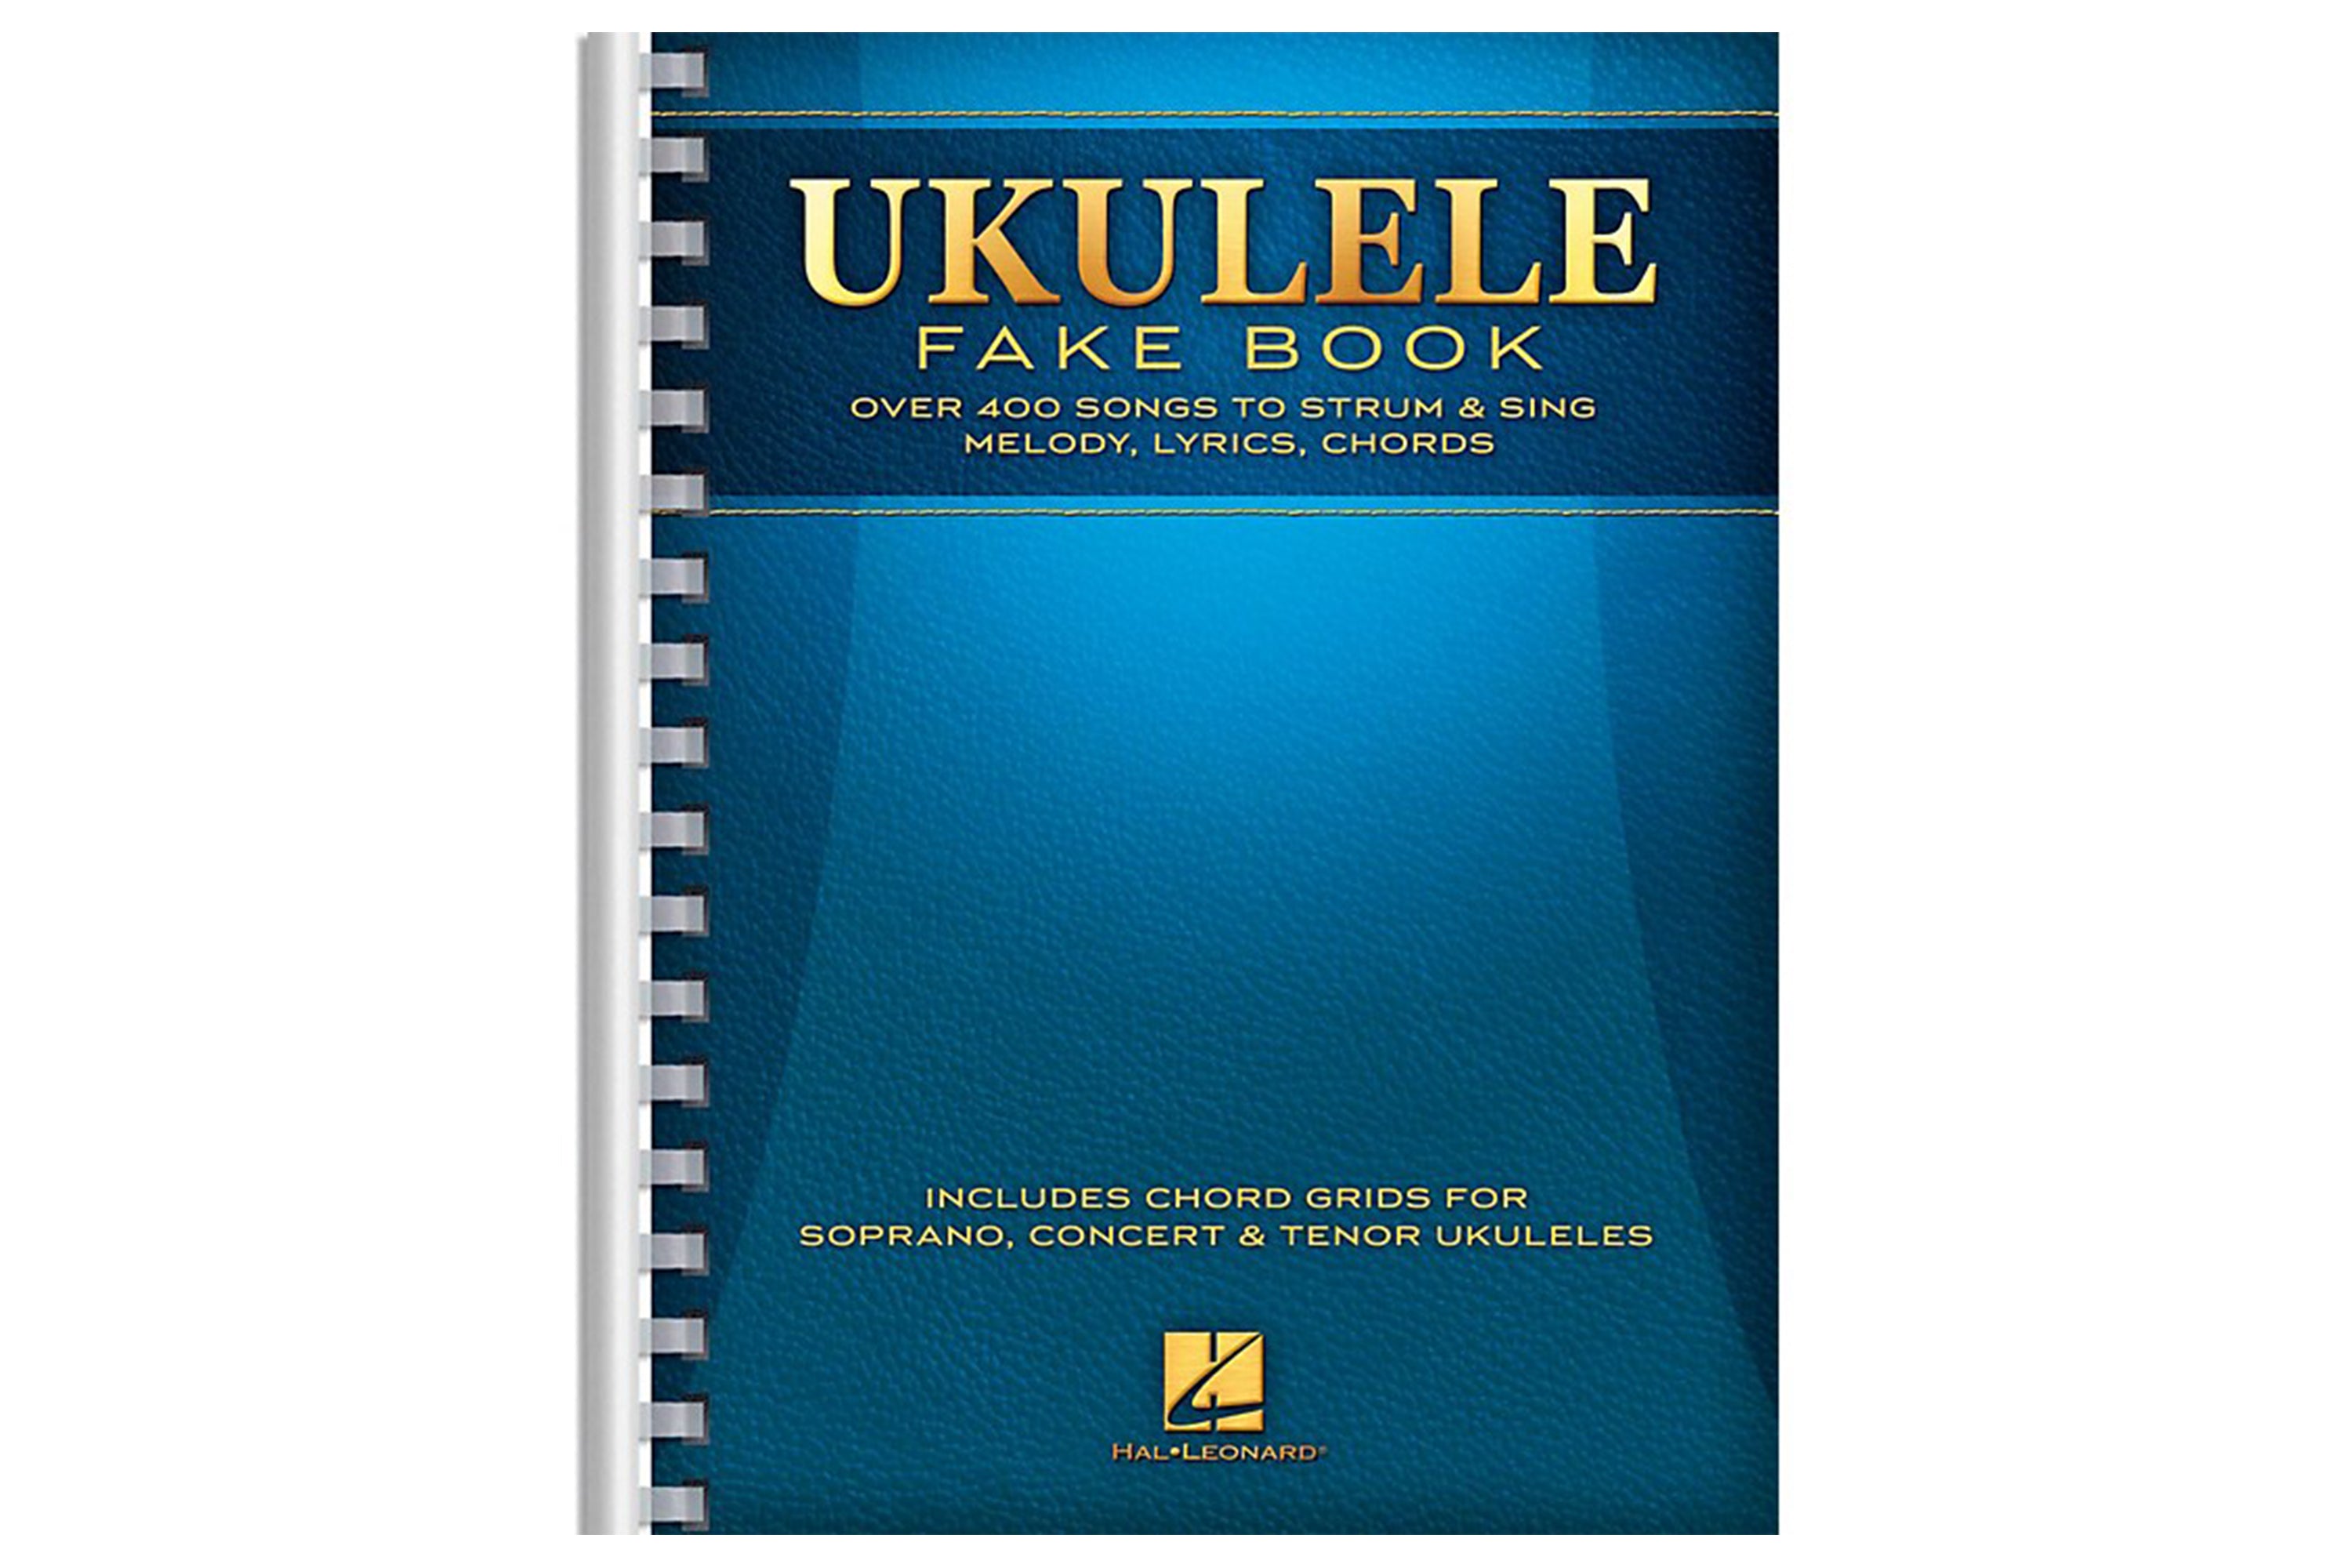 Ukulele Fake Book Travel Size 